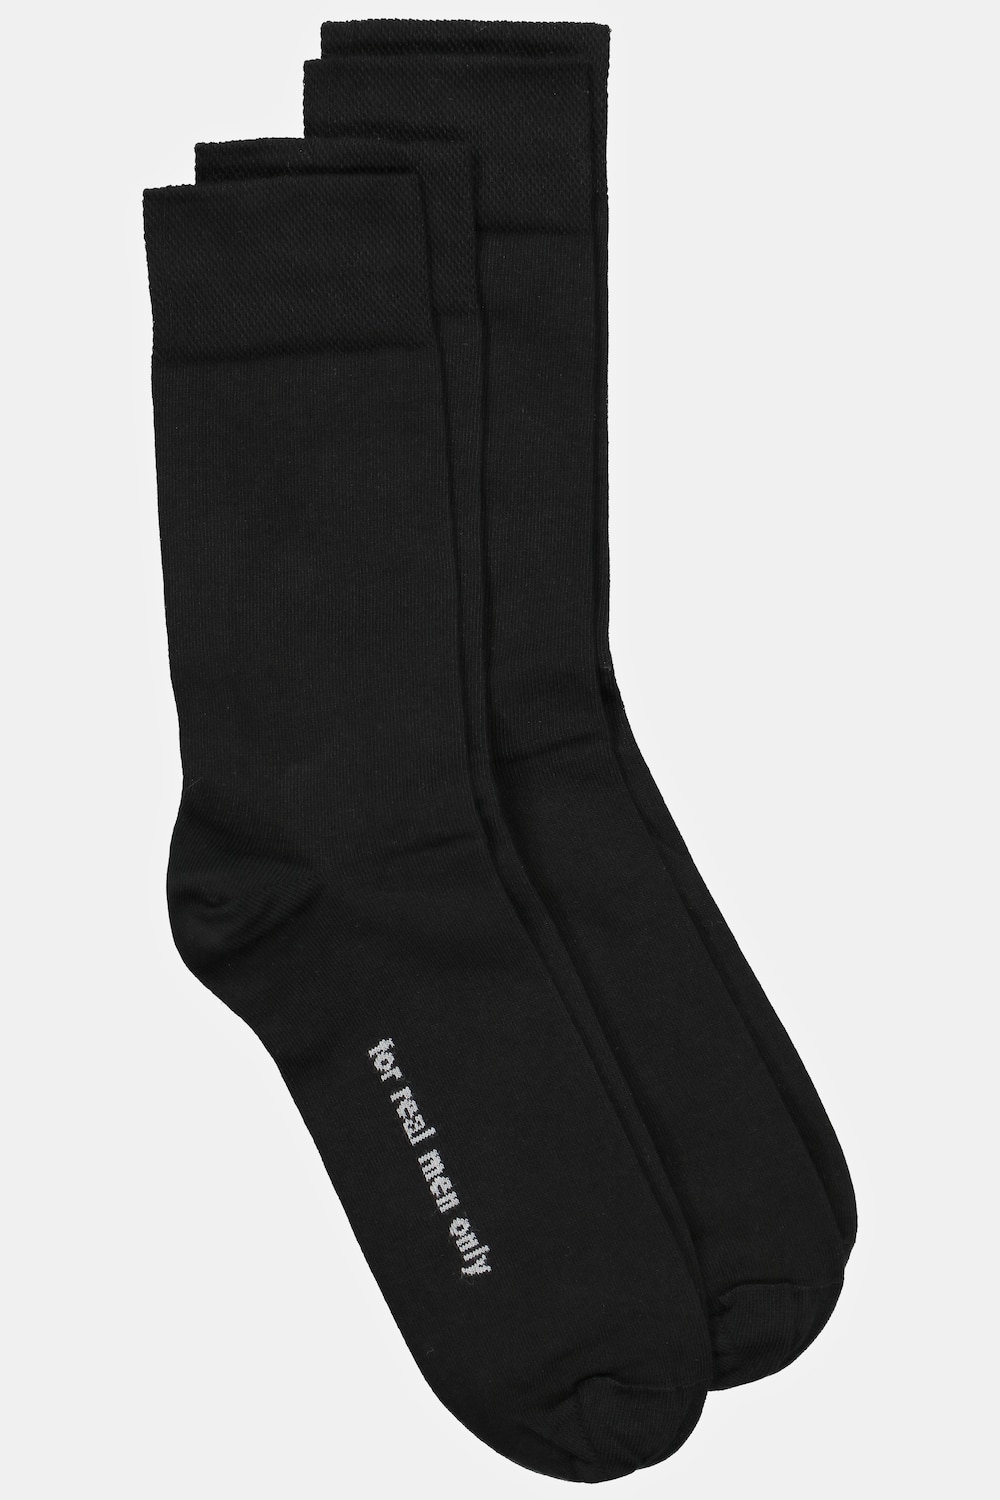 Große Größen Socken, Herren, schwarz, Größe: 39-42, Baumwolle/Synthetische Fasern, JP1880 von JP1880